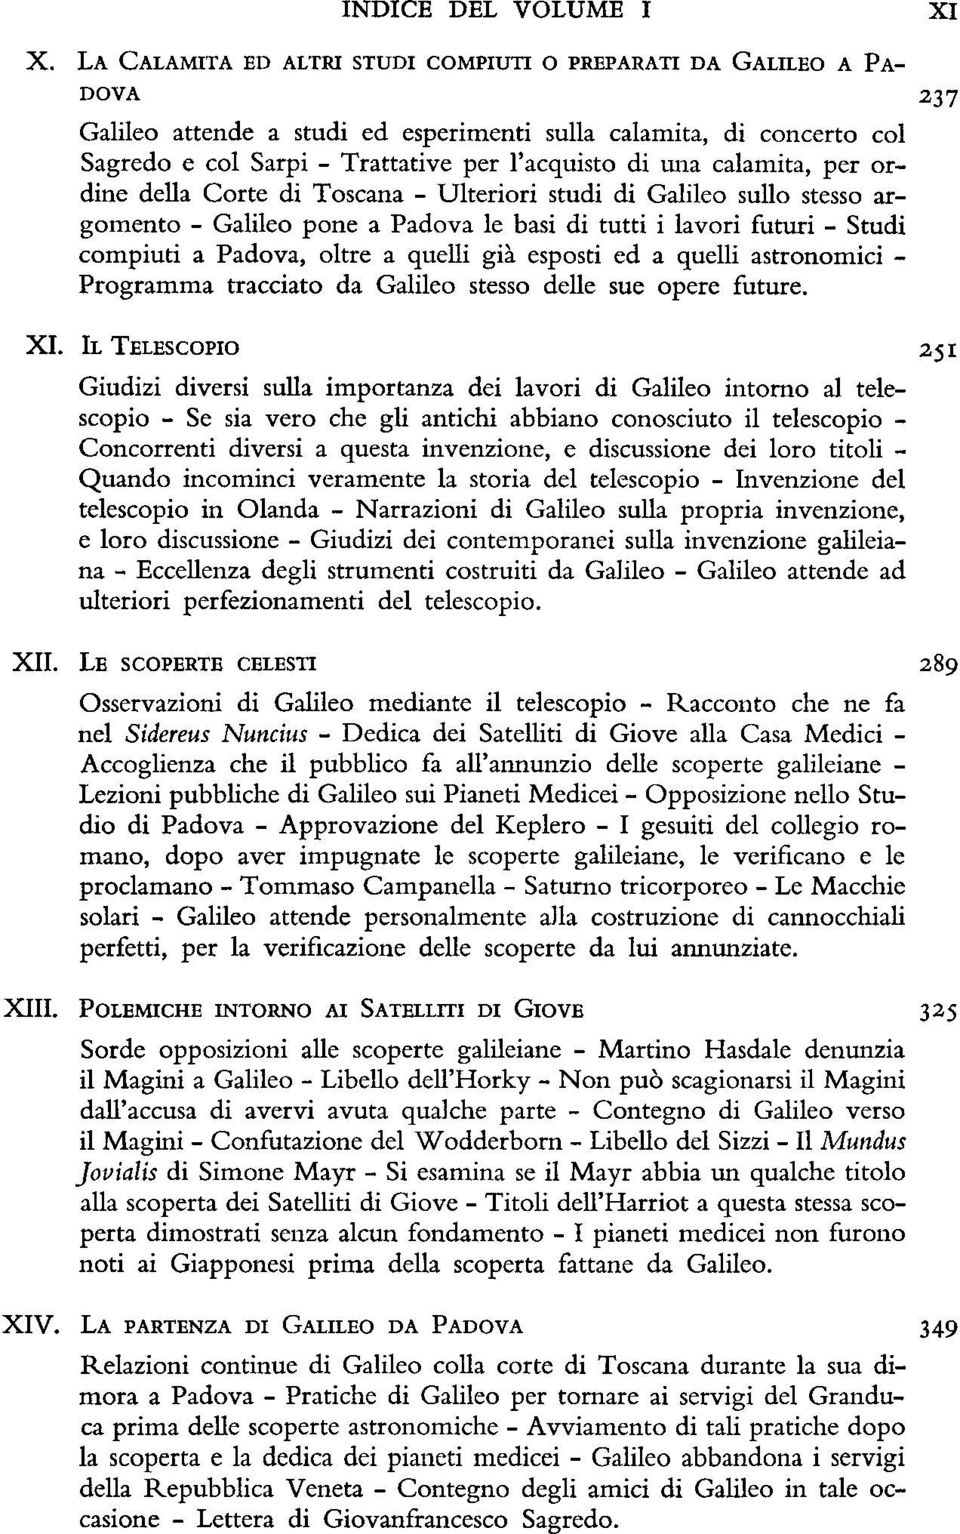 calamita, per ordine della Corte di Toscana - Ulteriori studi di Galileo sullo stesso argomento - Galileo pone a Padova le basi di tutti i lavori futuri - Studi compiuti a Padova, oltre a quelli già